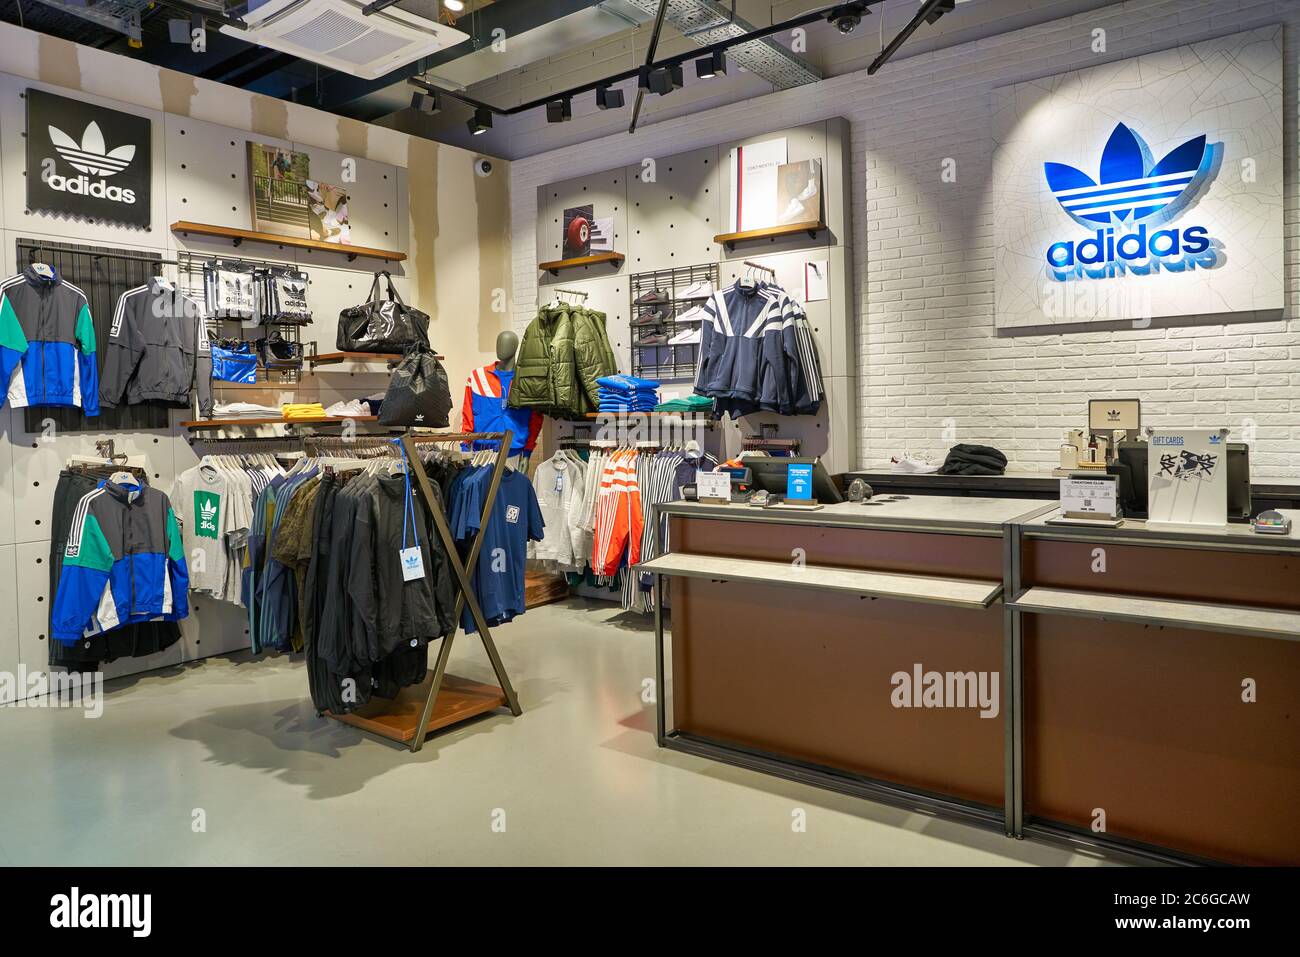 BERLÍN, ALEMANIA - ALREDEDOR DE SEPTIEMBRE de 2019: Tiro interior de la tienda Adidas en el centro comercial Berlín Fotografía de stock - Alamy